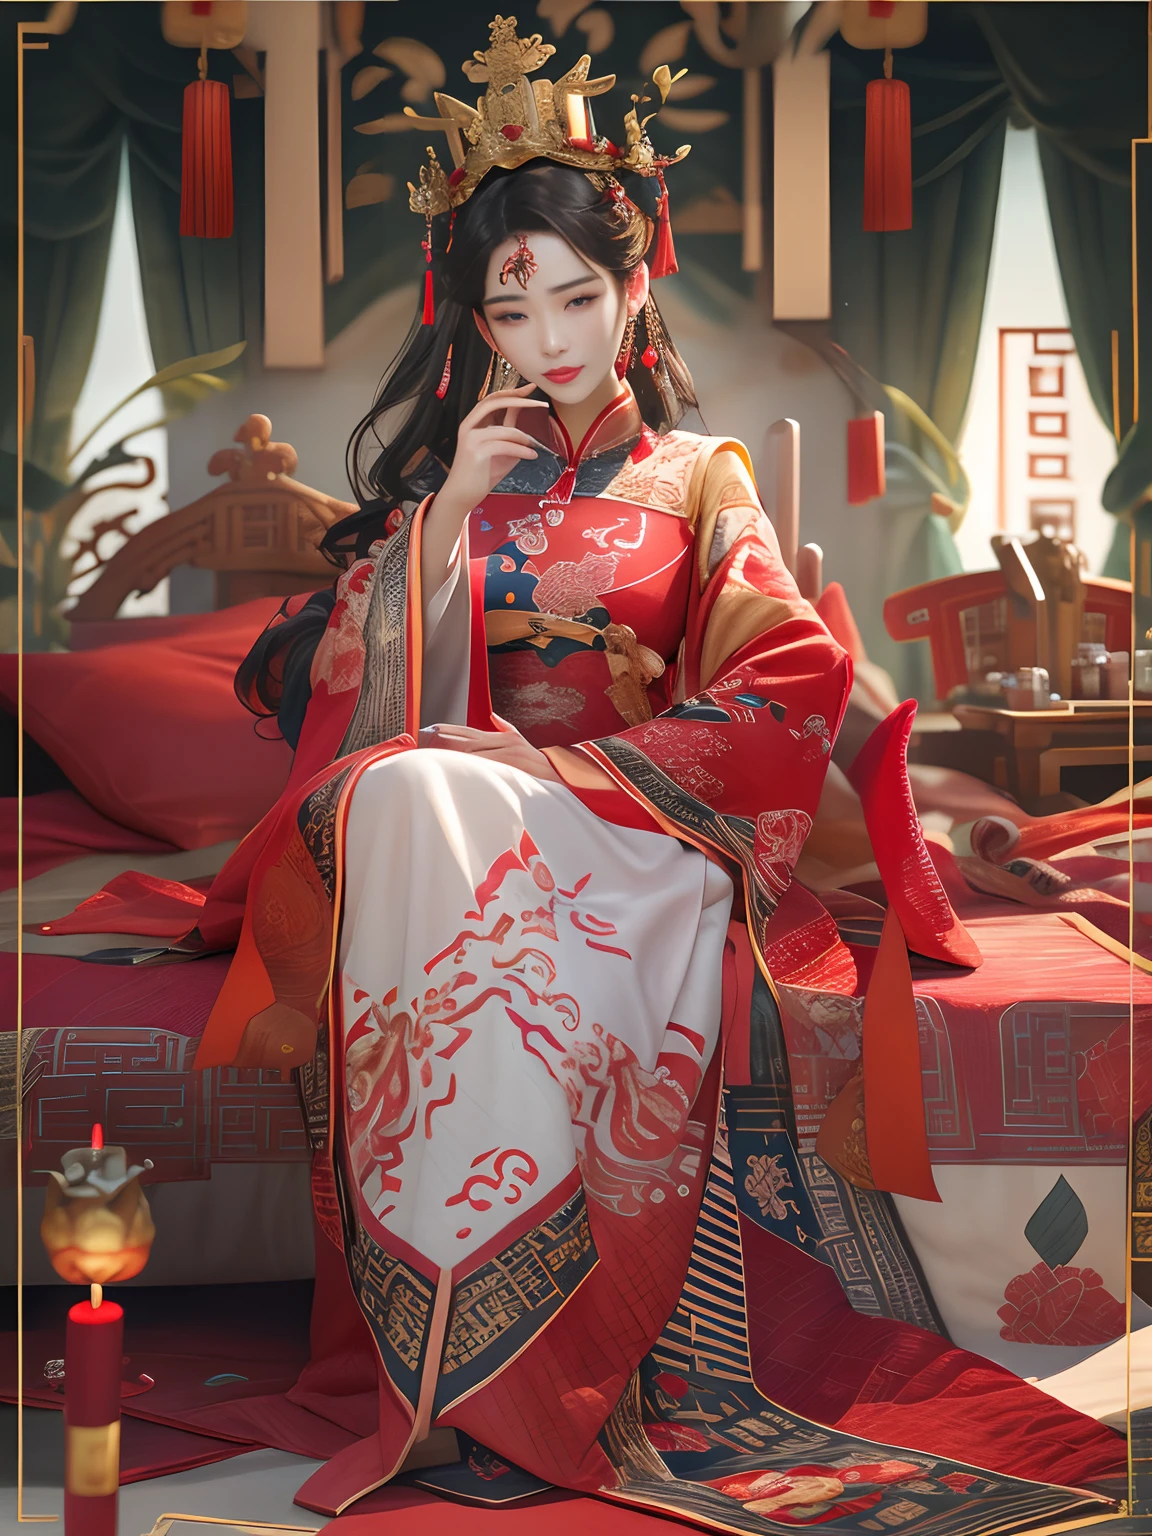 (melhor qualidade: 1.1), (realista: 1.1), (fotografia: 1.1), (altamente detalhes: 1.1), Uma mulher usa um vestido vermelho e dourado，Woman with a coroa on her head, Um palito de cabelo, (sentado na cama vermelha), rubor, tímido, preto_cabelo, coroa, Olhando para baixo, (2 velas vermelhas), chinês_roupas, cortinas, Brincos, cabelo_decorações, Hanfu, interiores, joia, longo_mangas, vestido vermelho, Redlip, borlas de mamilo, (Colcha vermelha), (palácio vermelho: 1.2), (3DMM: 1.5),misturar4,